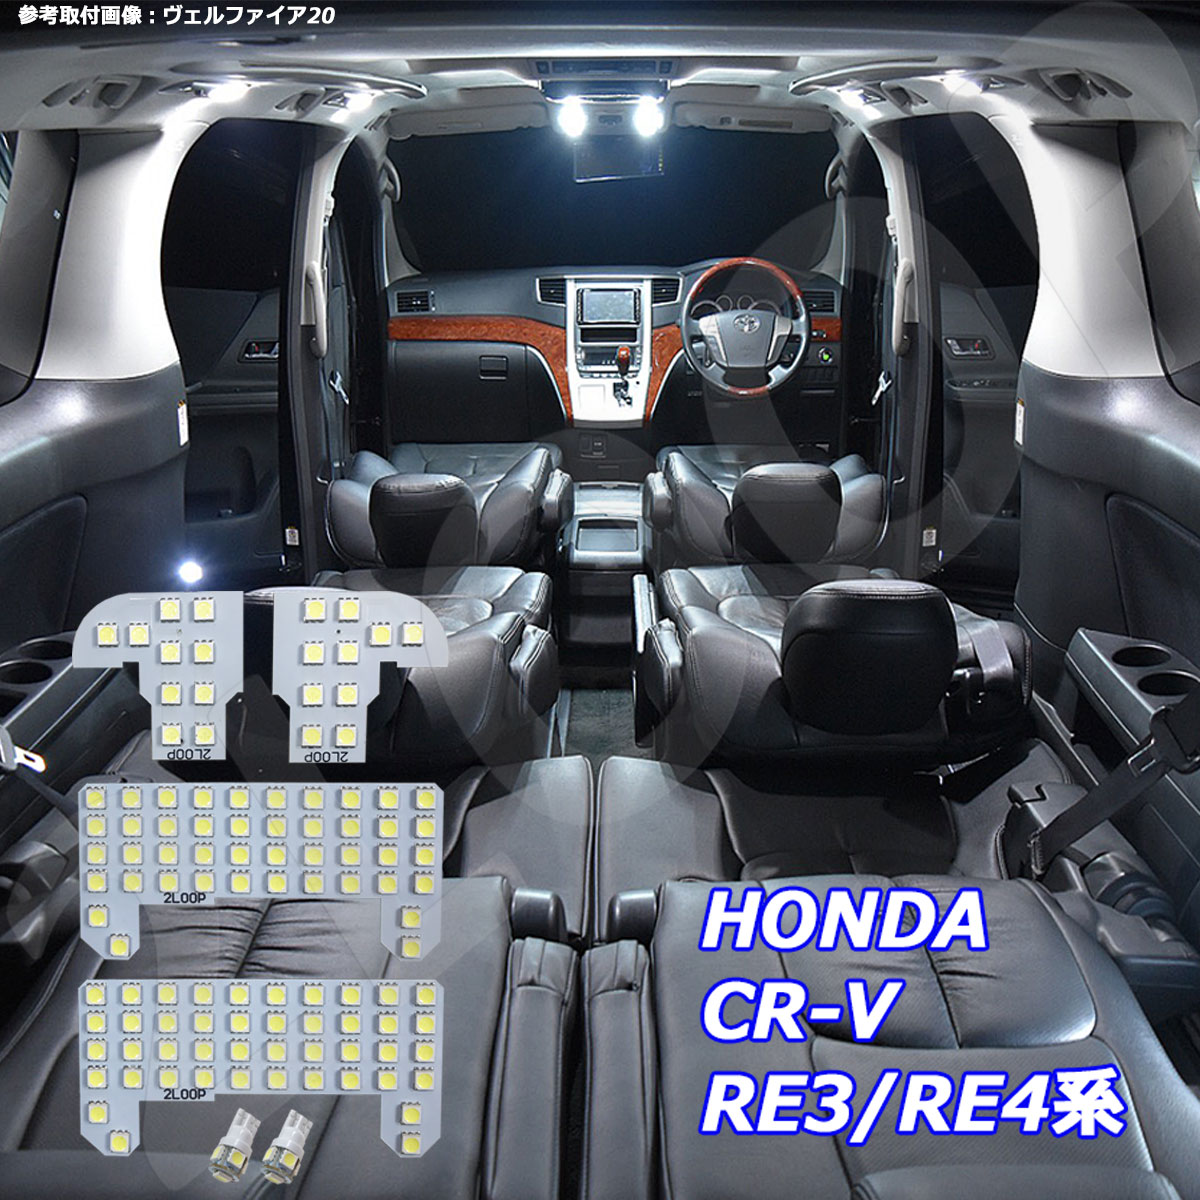 CR-V RE3 RE4系 LED ルームランプ 綺麗な光 車検対応 車種専用設計 6000Kクラスの 3チップSMD6点【純白光】1年保証